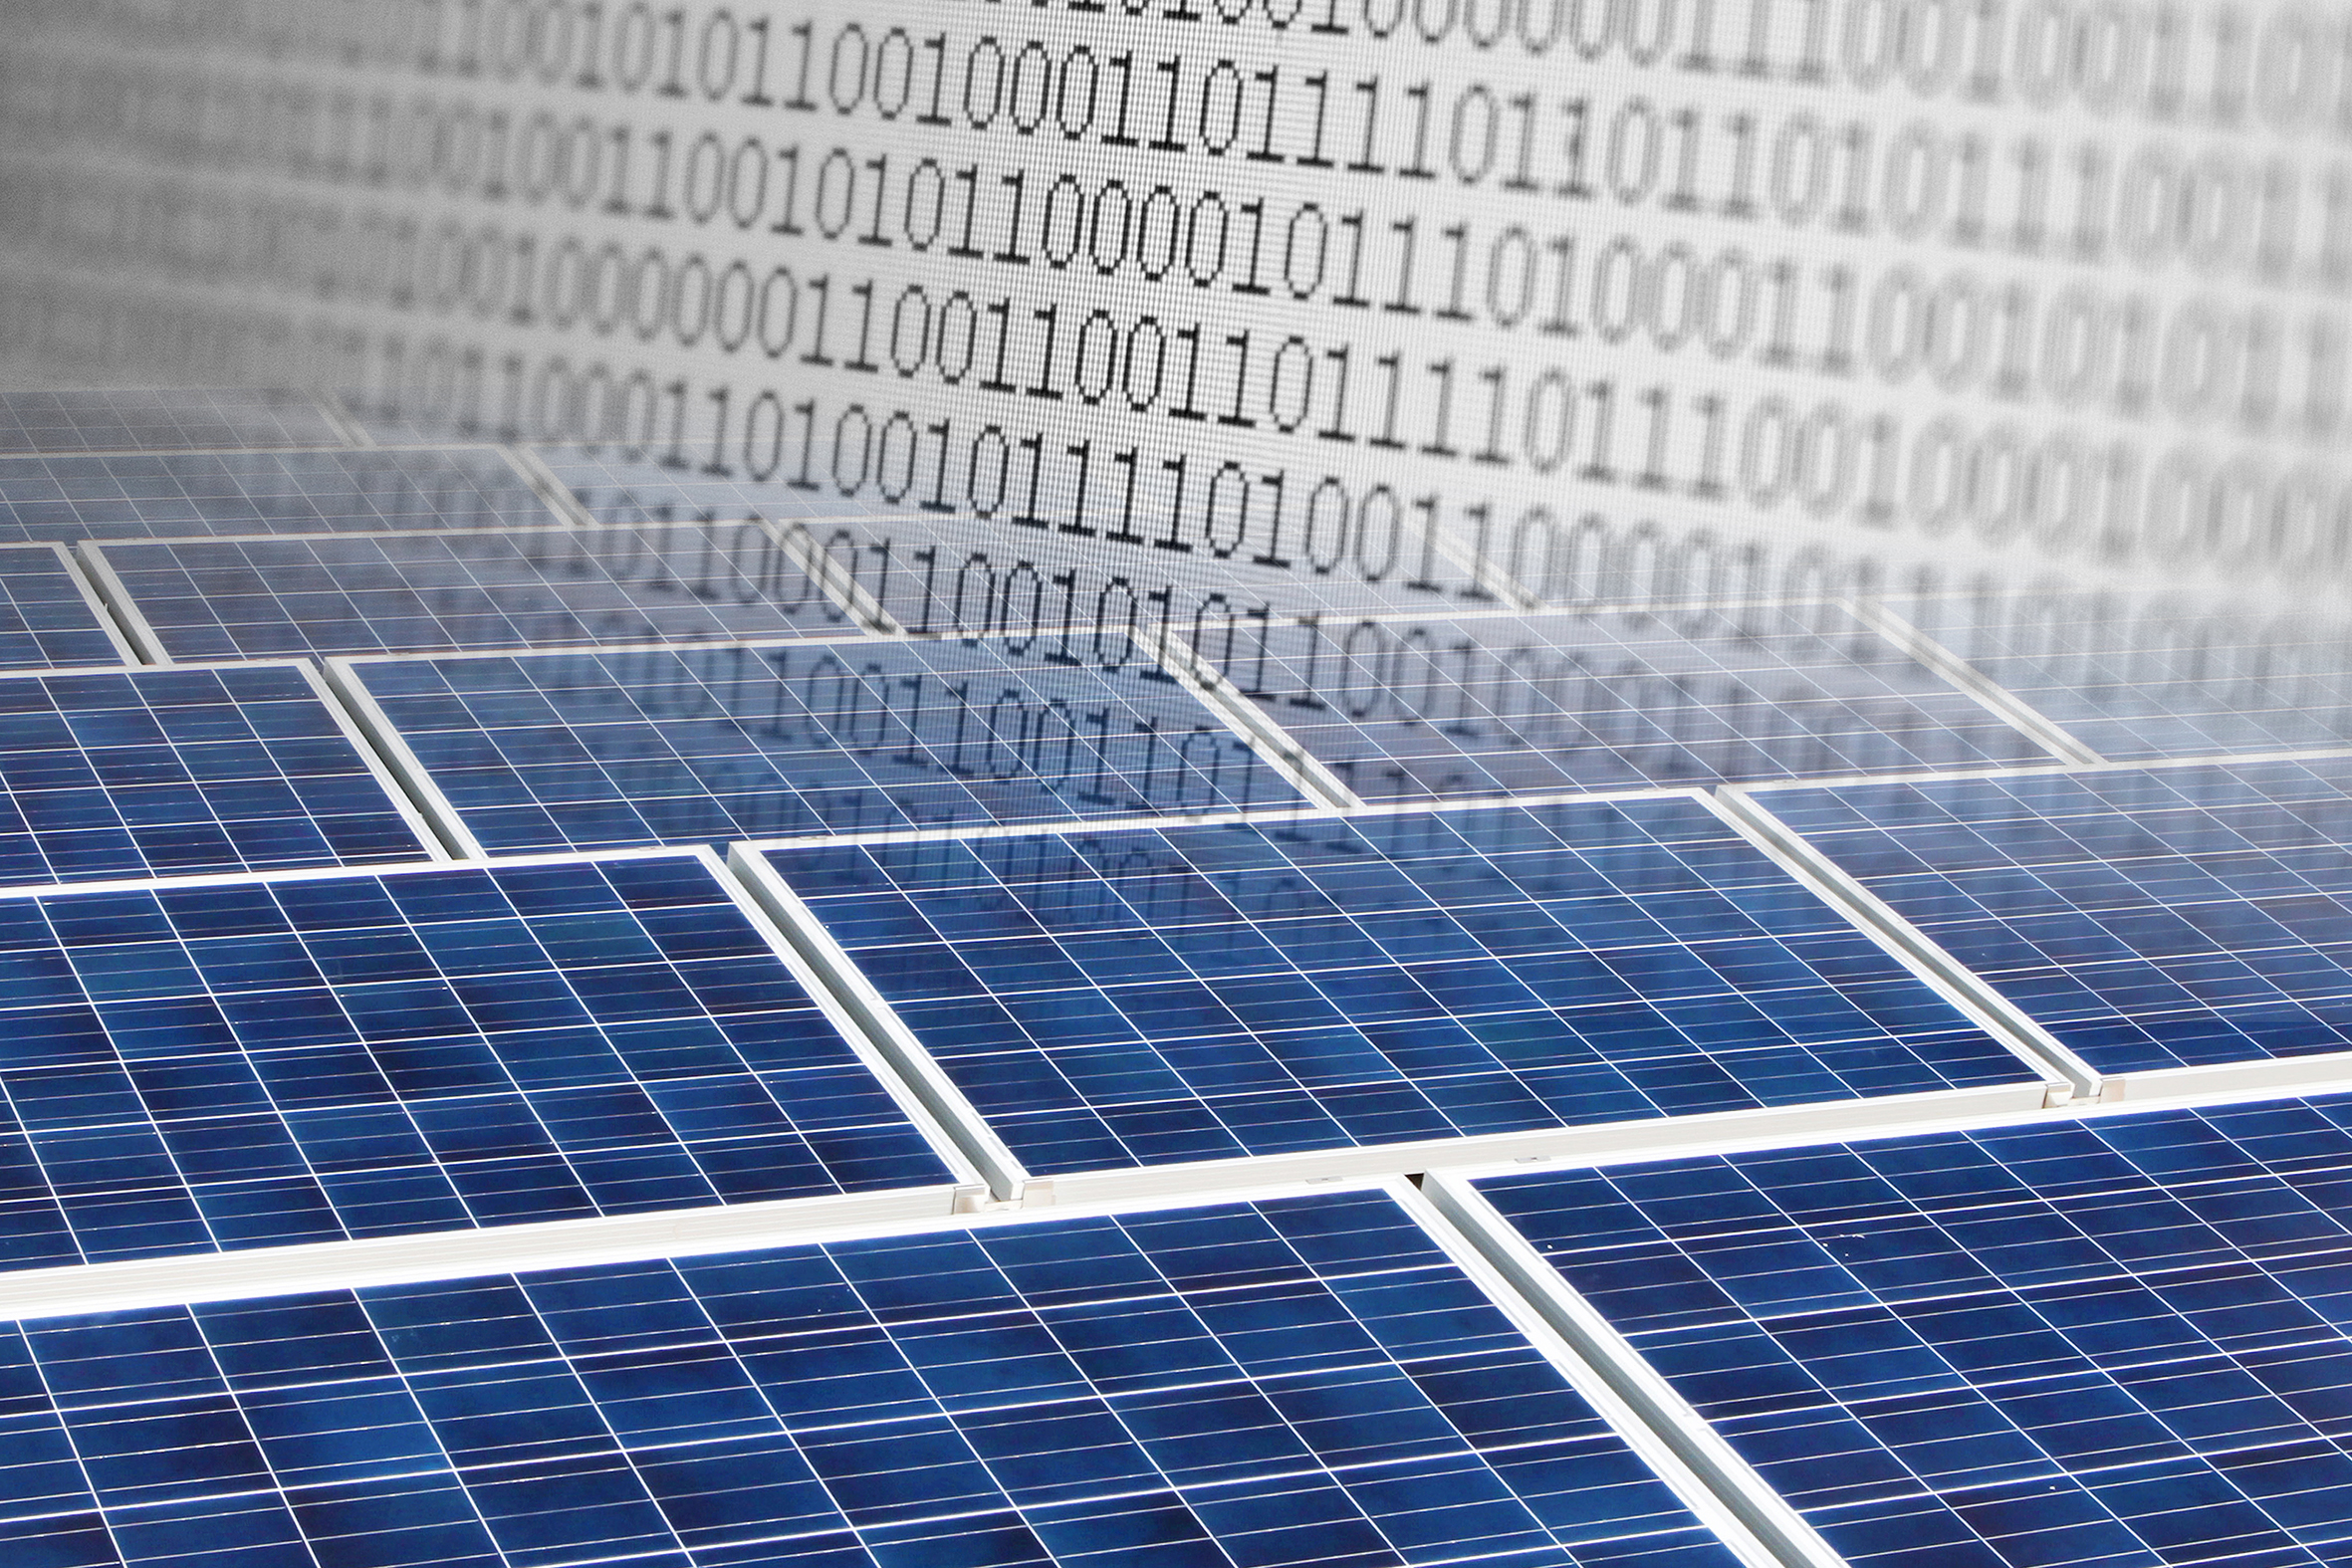 Messen, analysieren, optimieren – die Digitalisierung bietet zahlreiche neue Ansatzpunkte für eine noch bessere Qualitätskontrolle in der Photovoltaik